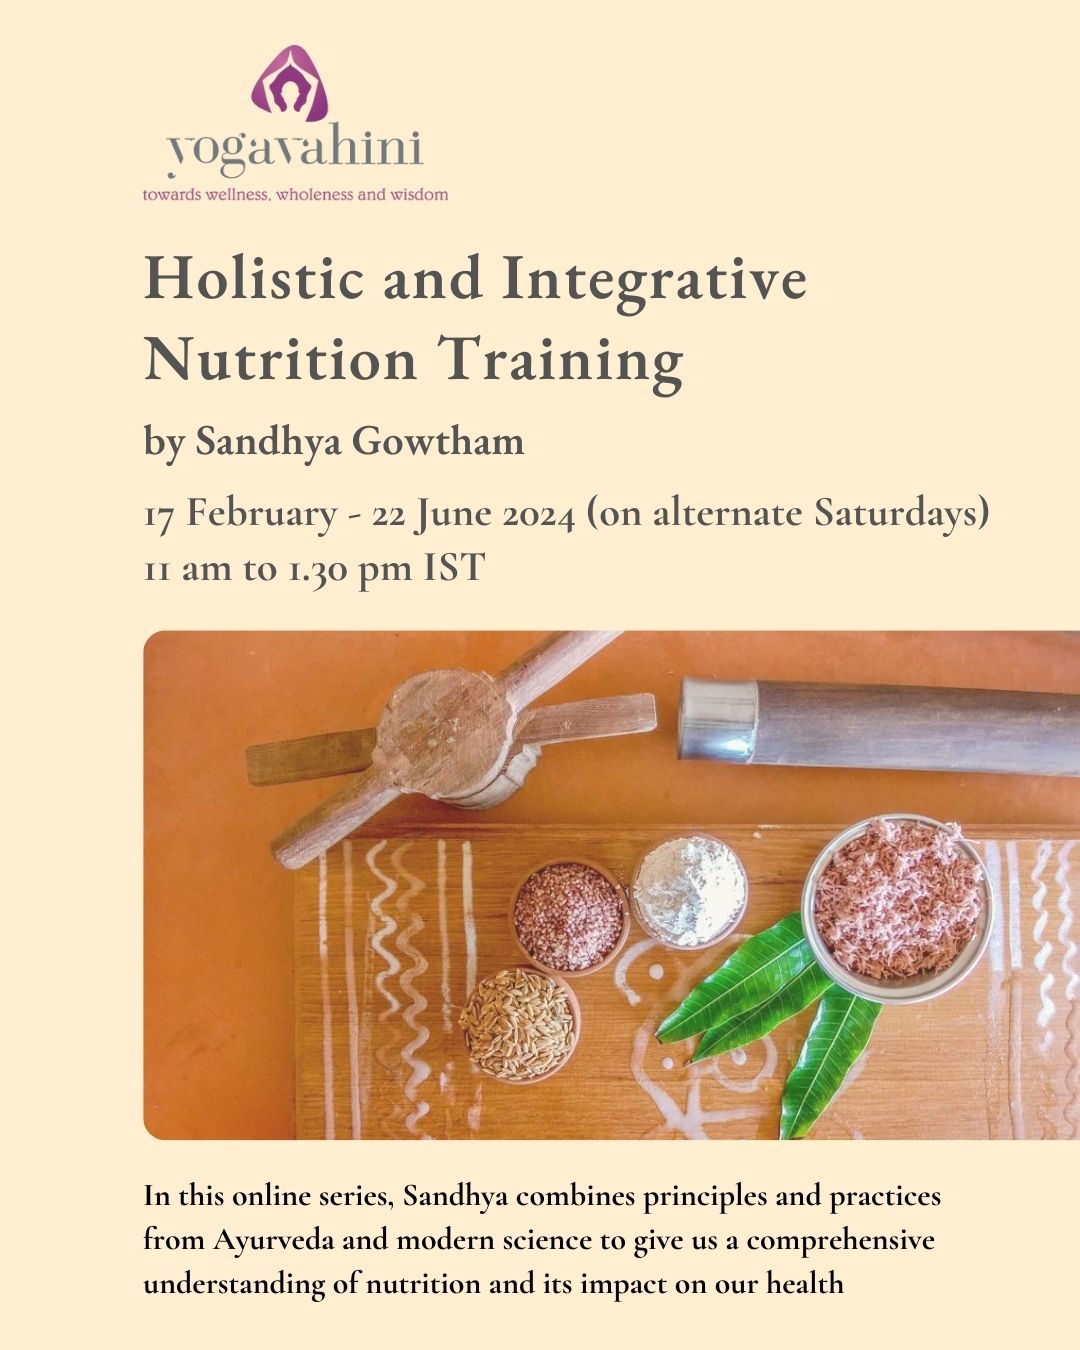 Nutrition training program